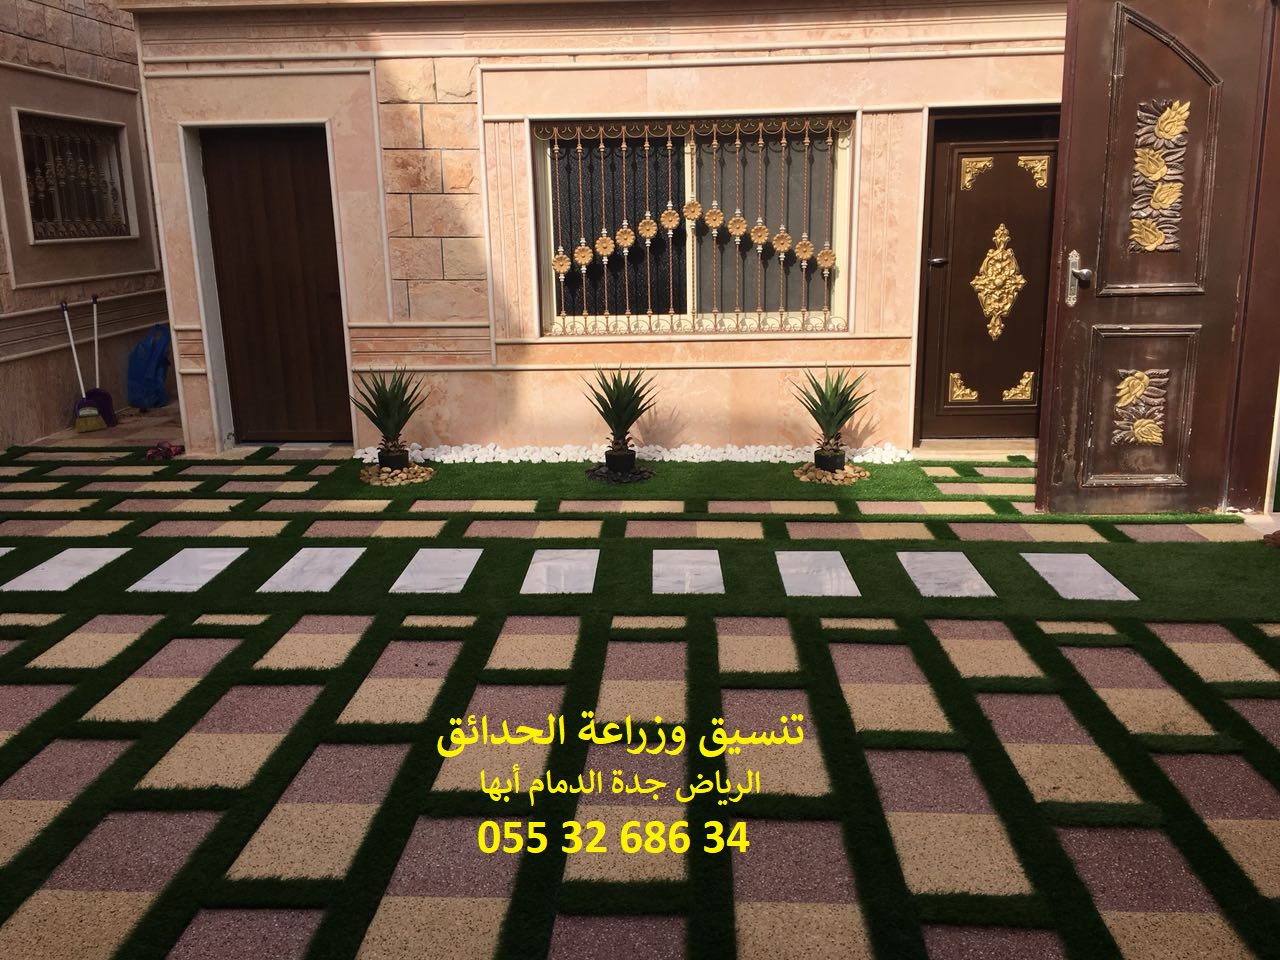 شركة تنسيق حدائق عشب صناعي عشب جداري الرياض جدة الدمام 0553268634 P_1143nc7ha9